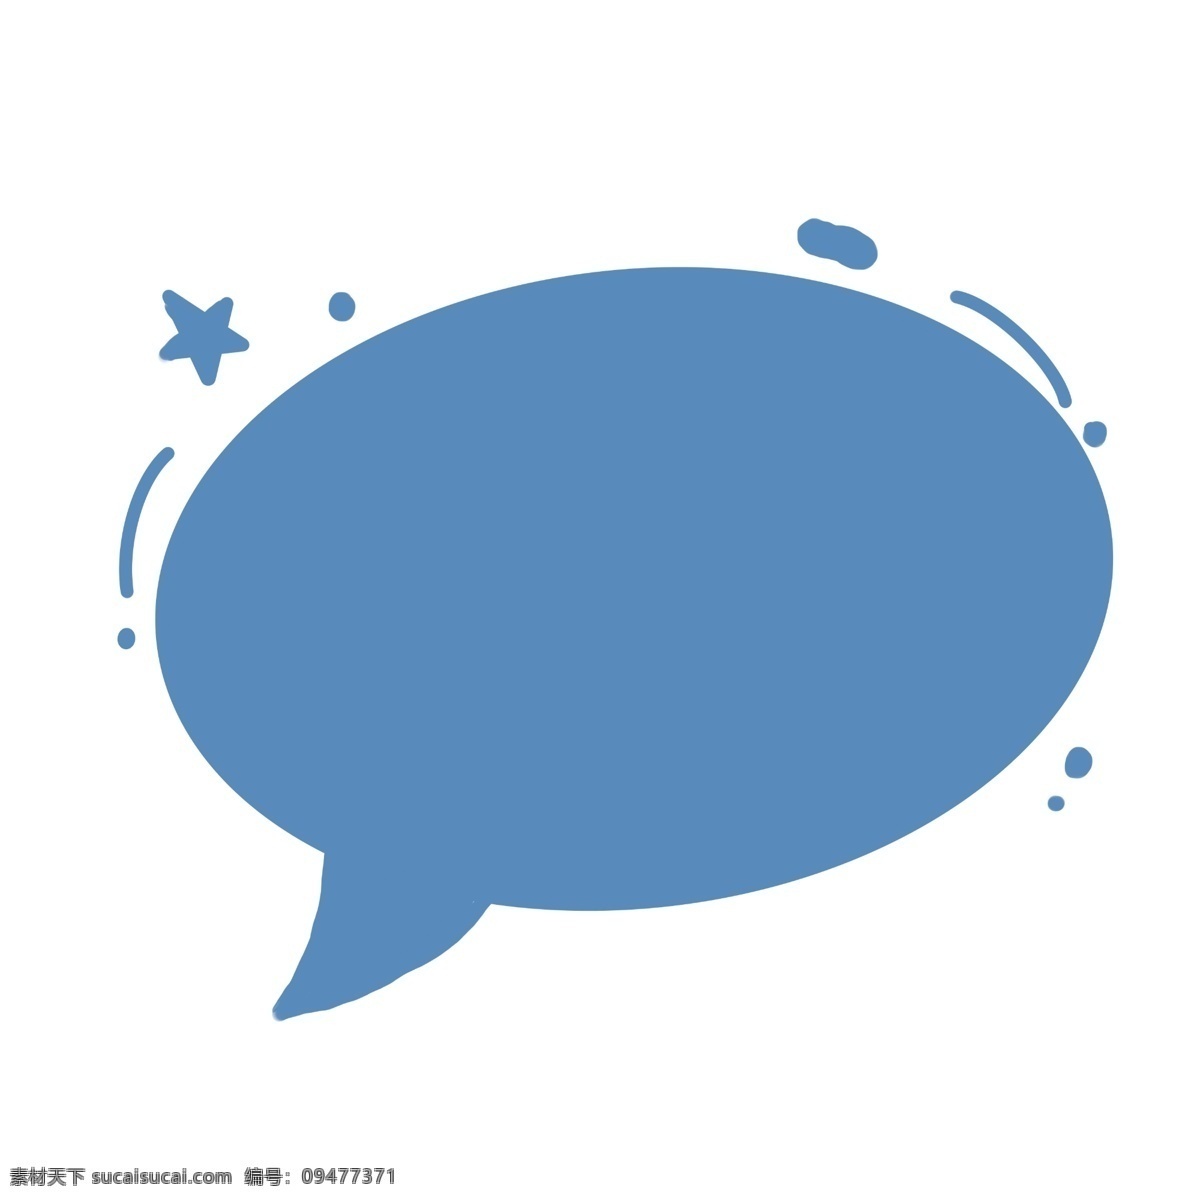 简单 对话框 手绘 星星 可爱 对话款 蓝色 简约 框 卡通 简单圆形 星星对话框 圆形 卡通手绘